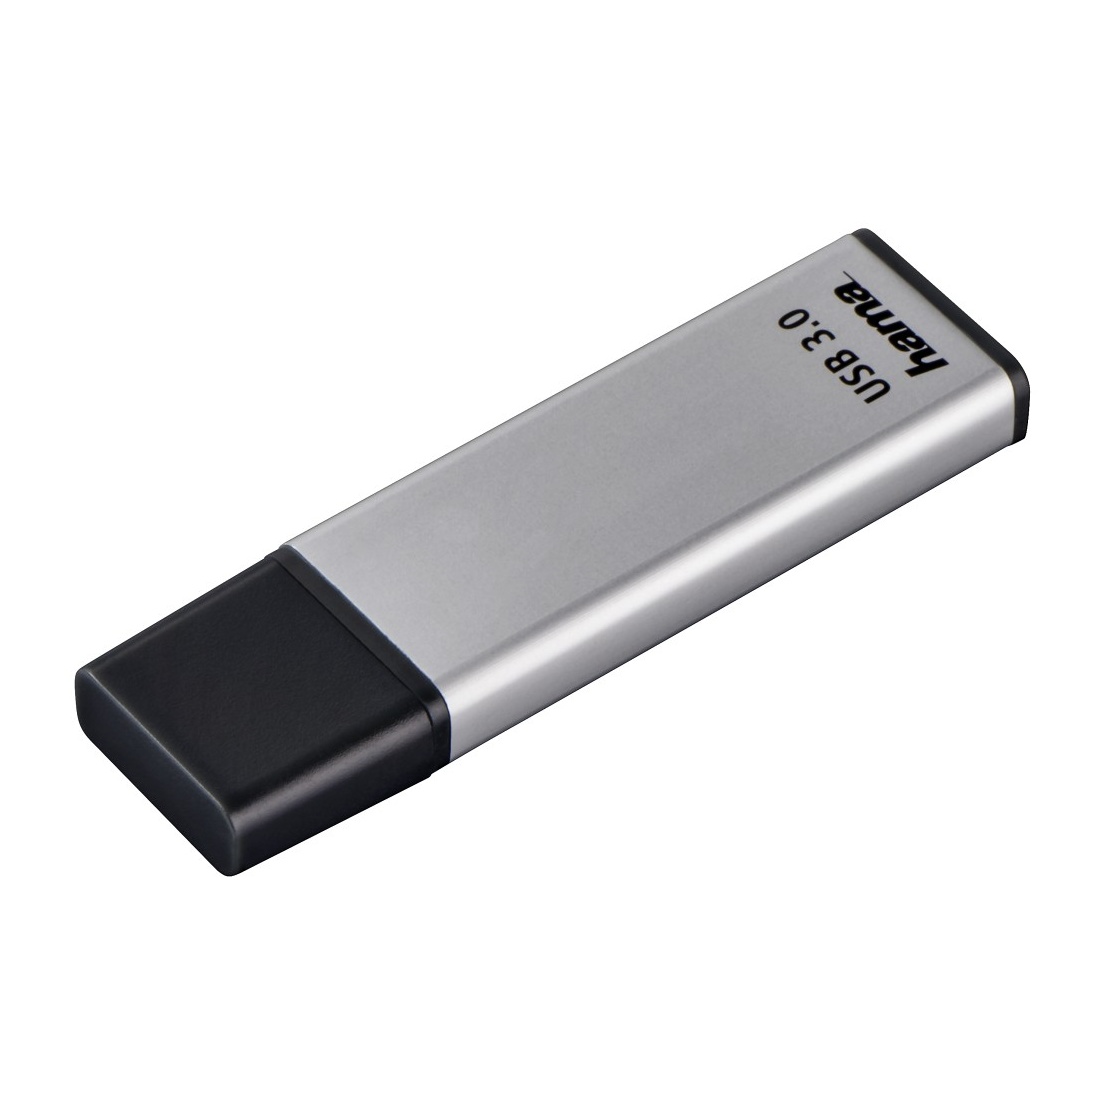 Bild von FlashPen Classic 128 GB silber USB 3.0